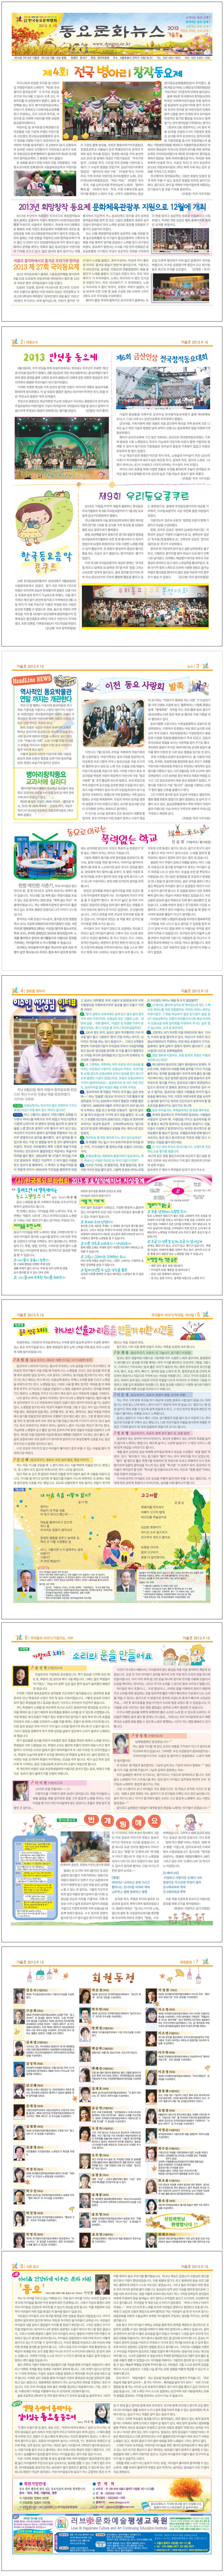 동요문화뉴스 10호 (2013 가을로)